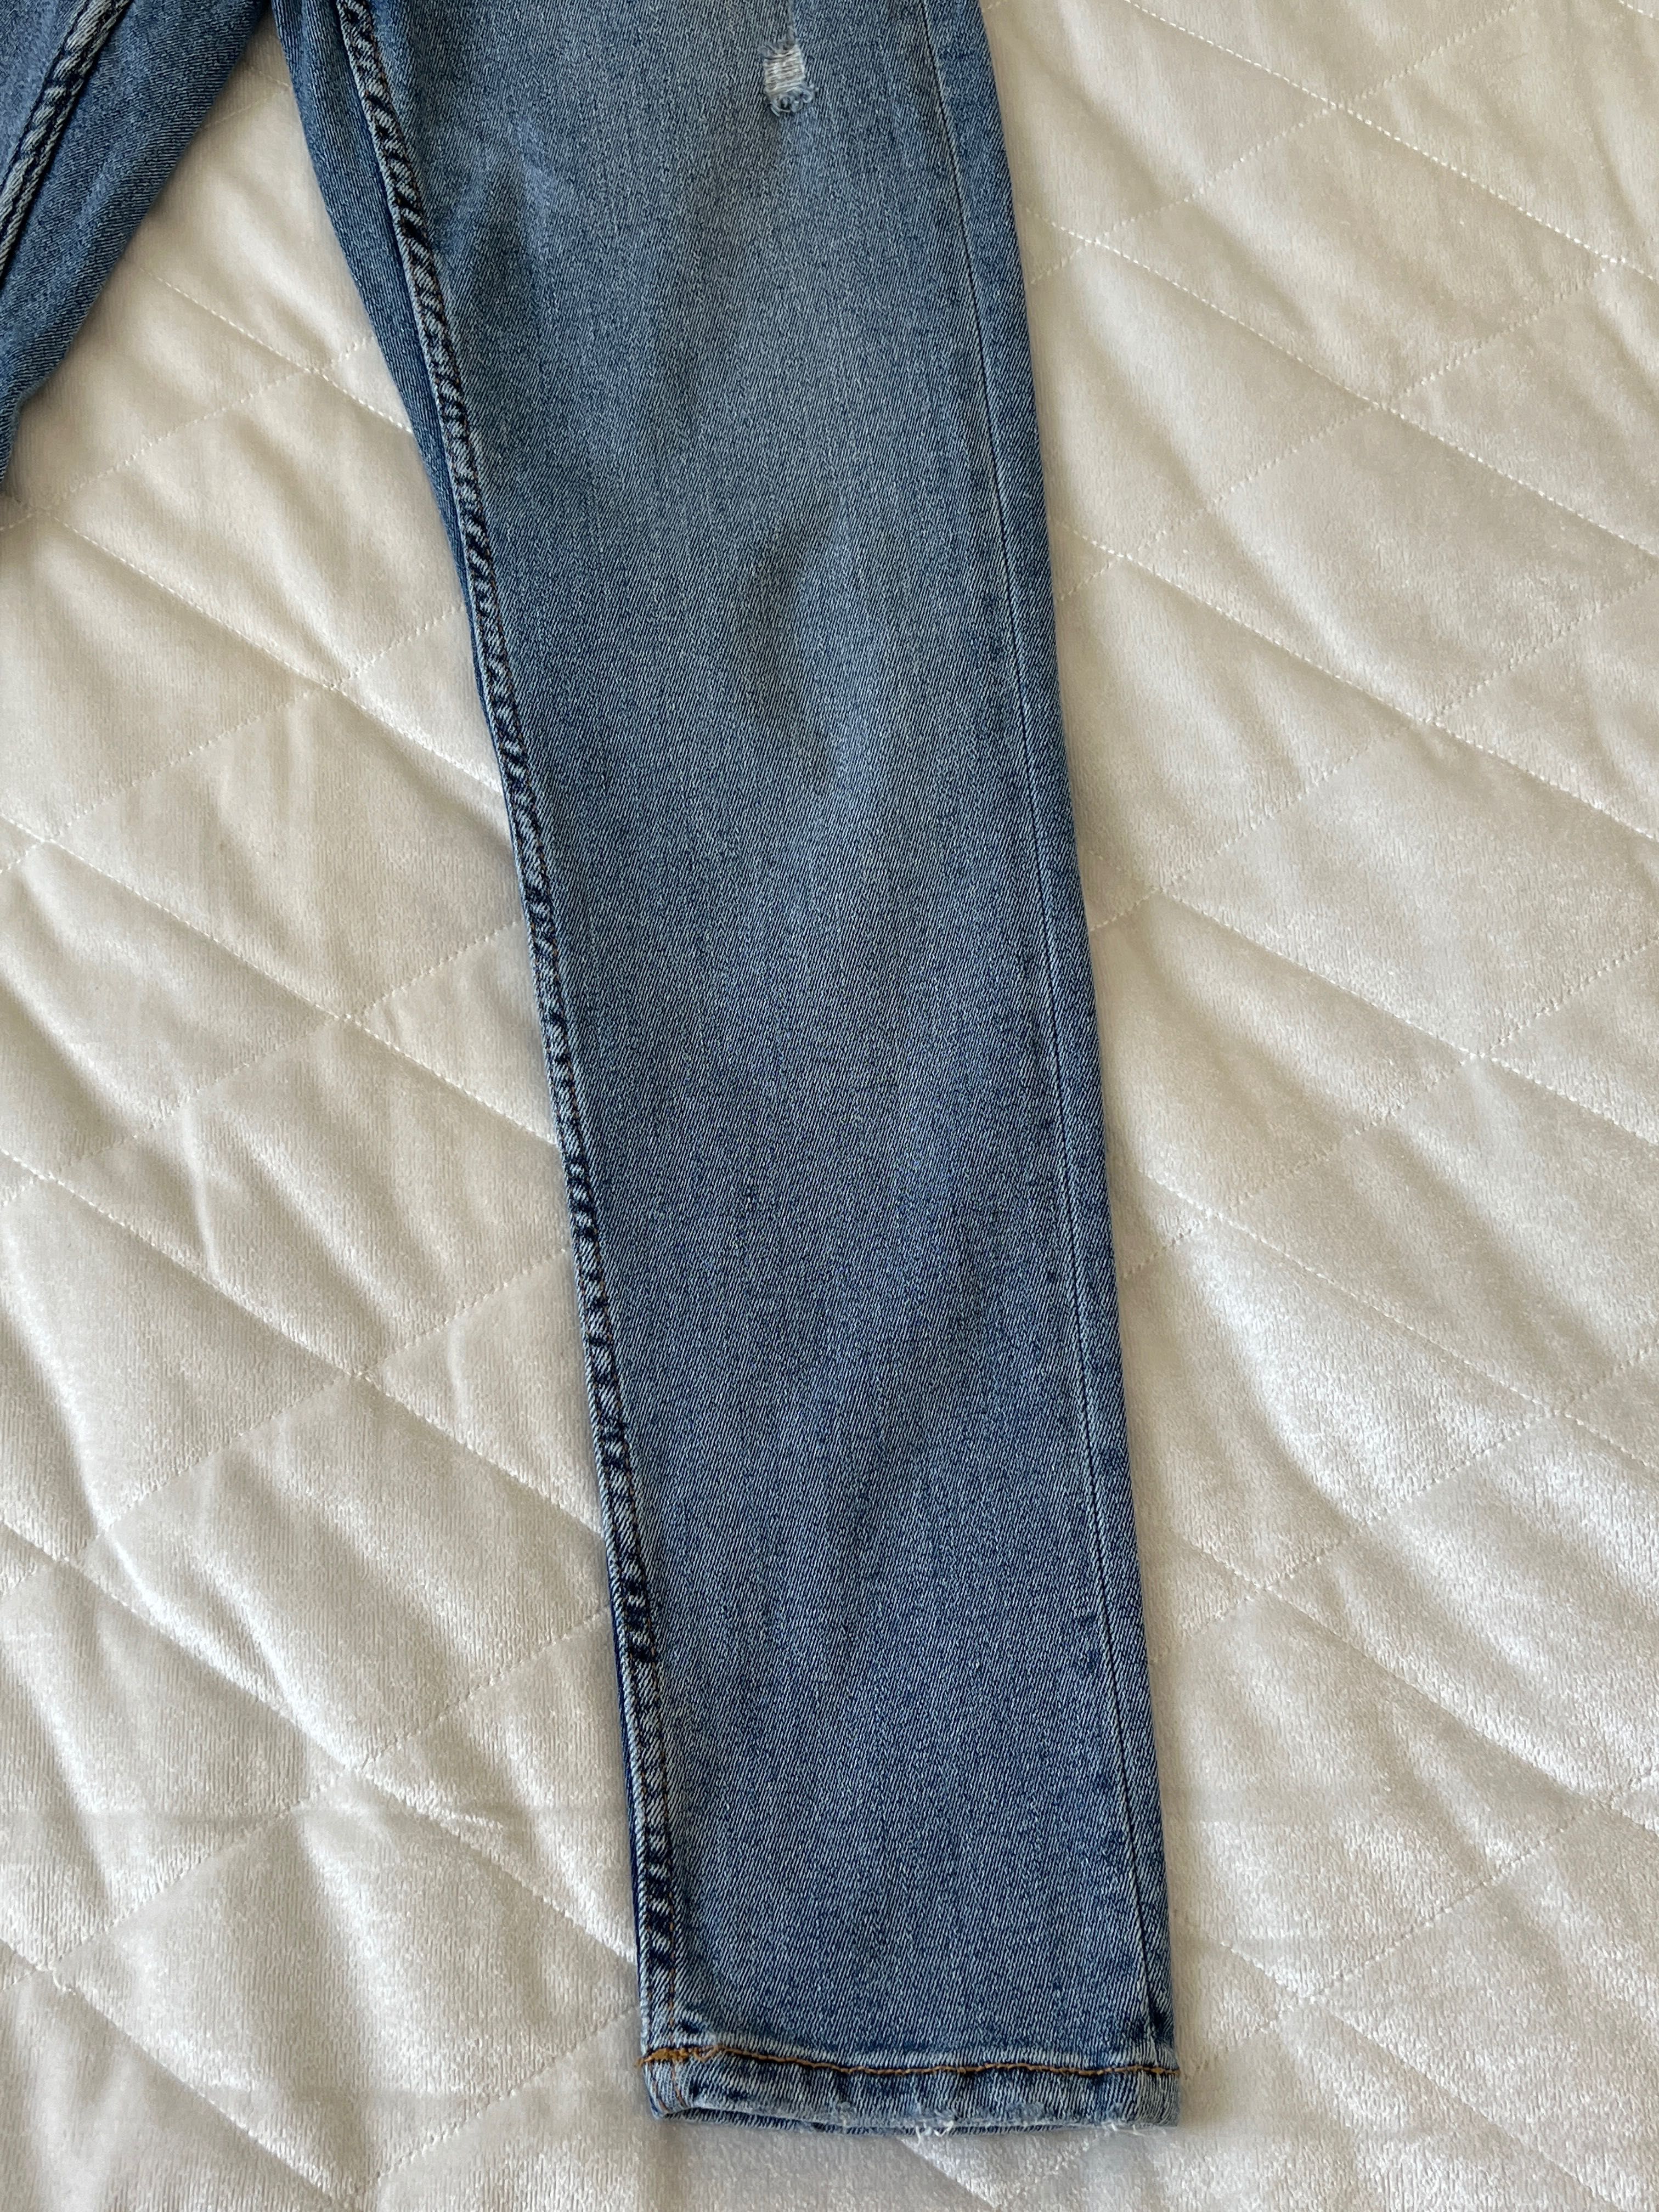 Spodnie yeansowe chłopięce, marka Zara, rozmiar 152 cm.